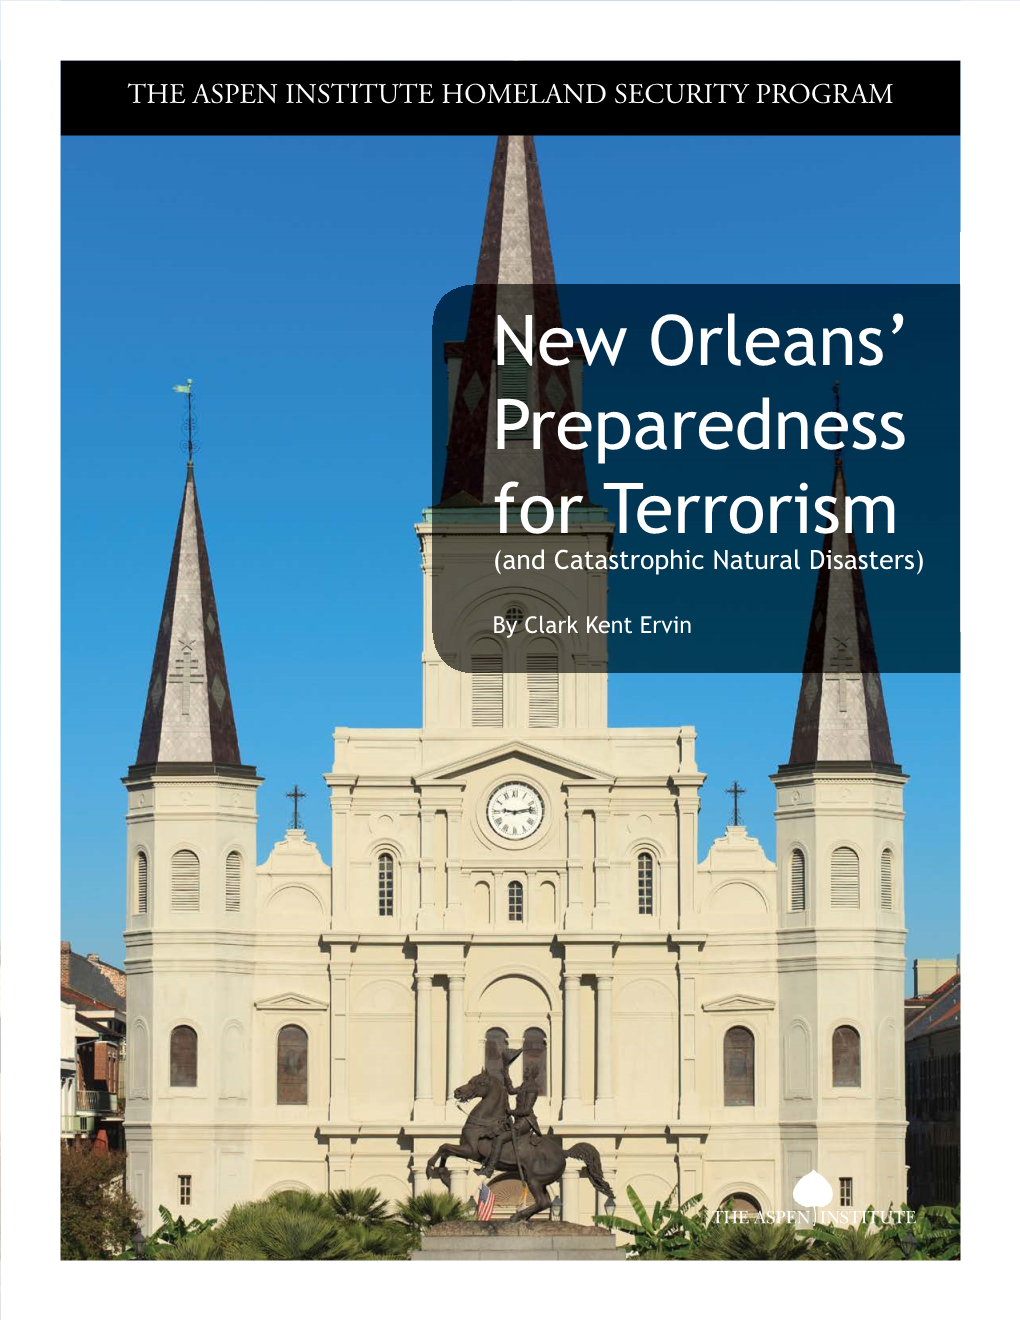 New Orleans' Preparedness for Terrorism